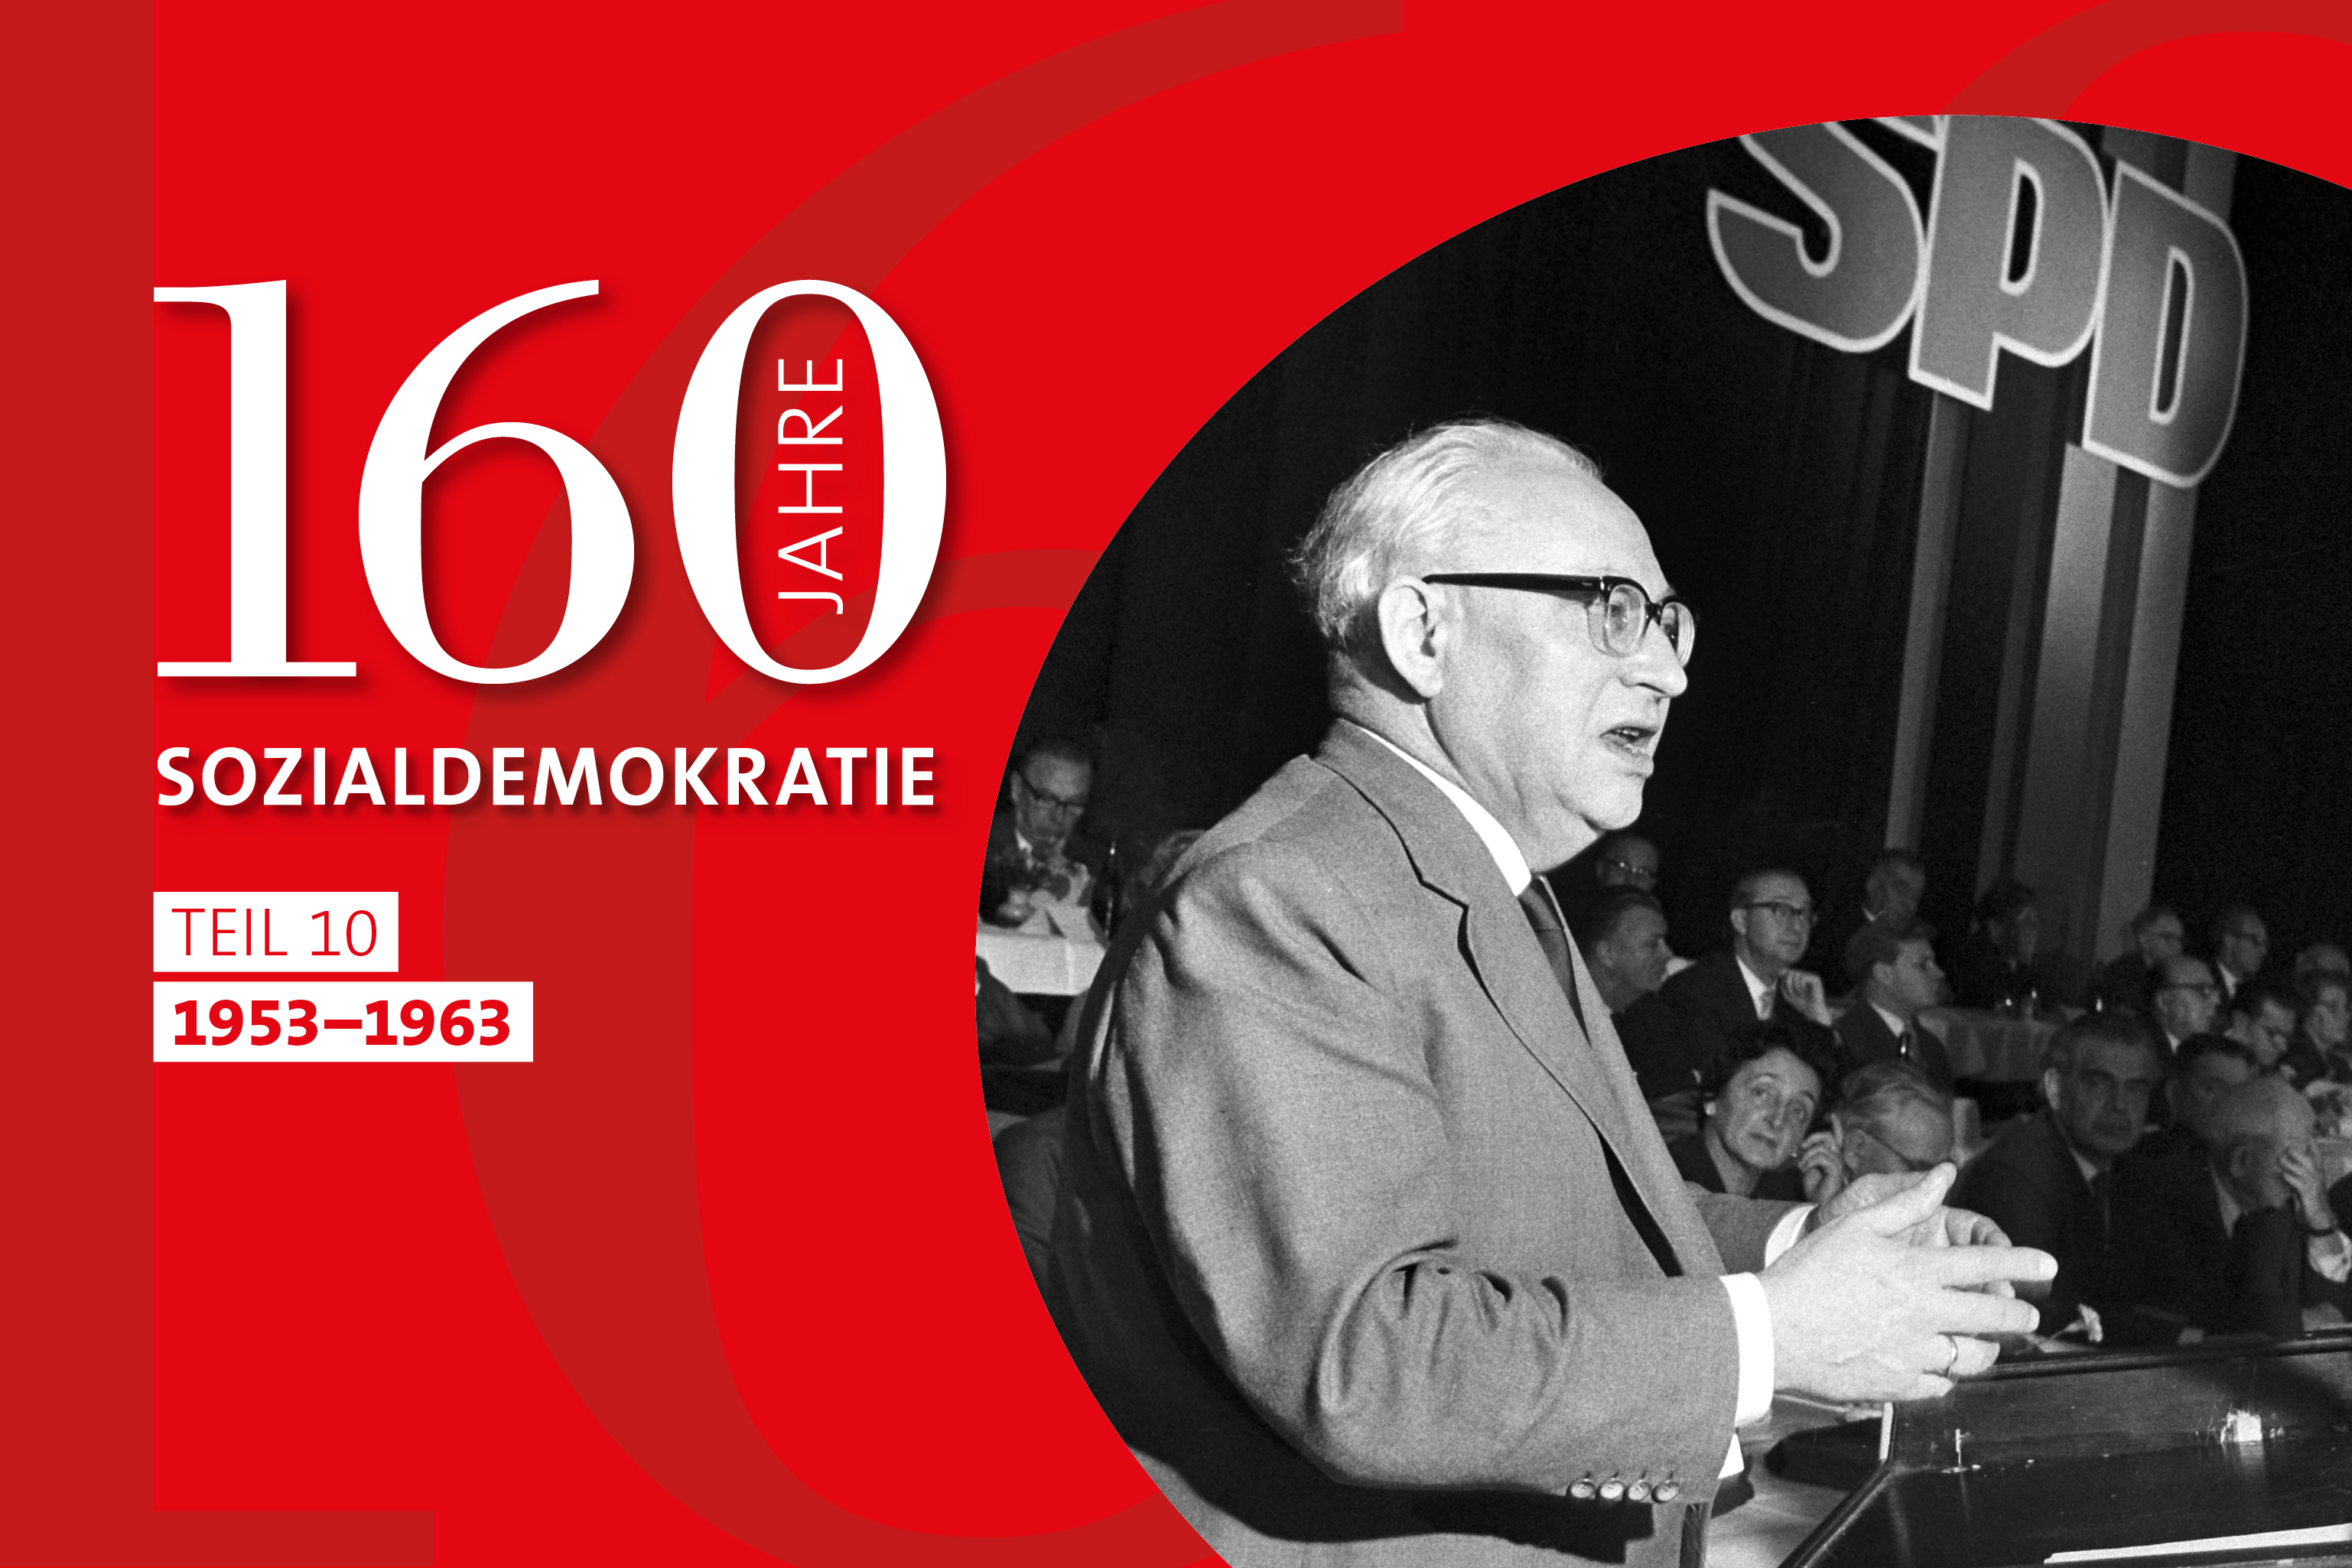 Der damalige SPD-Chef Erich Ollenhauer spricht auf dem Parteitag 1959 in Bad Godesberg.